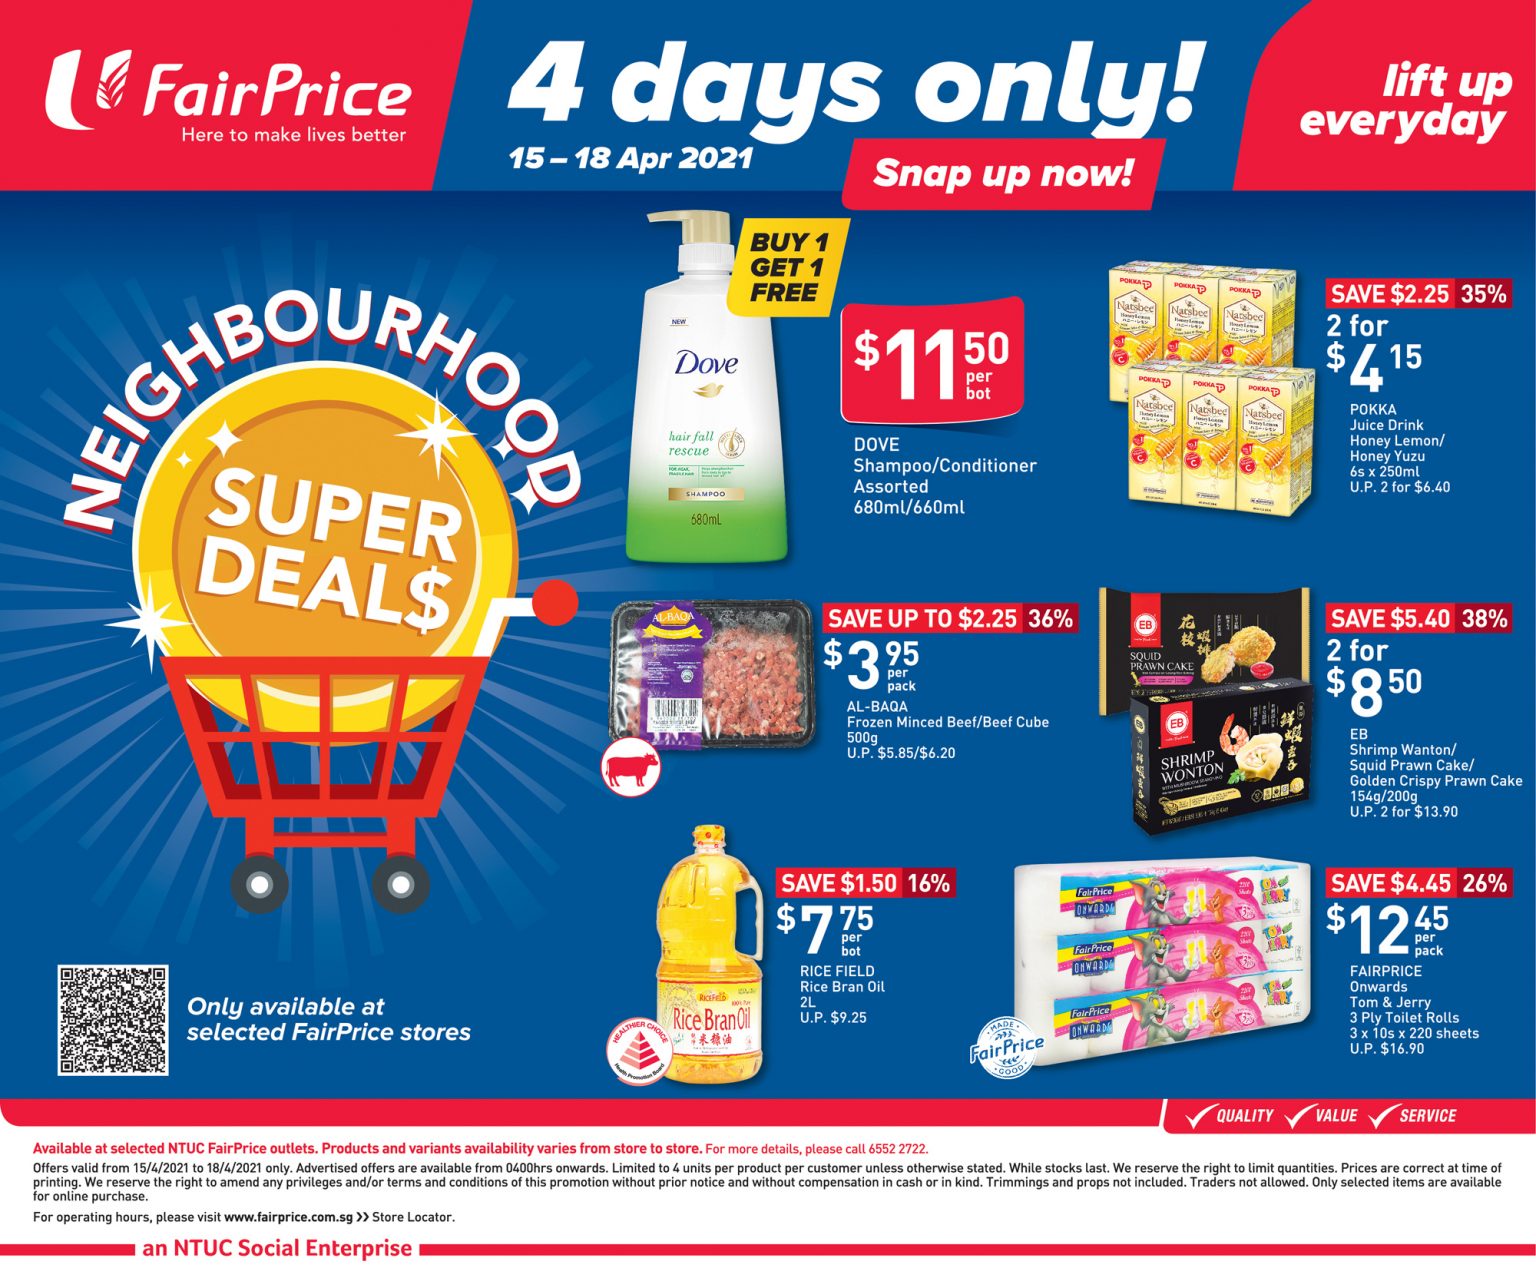 4 days only FairPrice neighbourhood super deals 15 April 2021